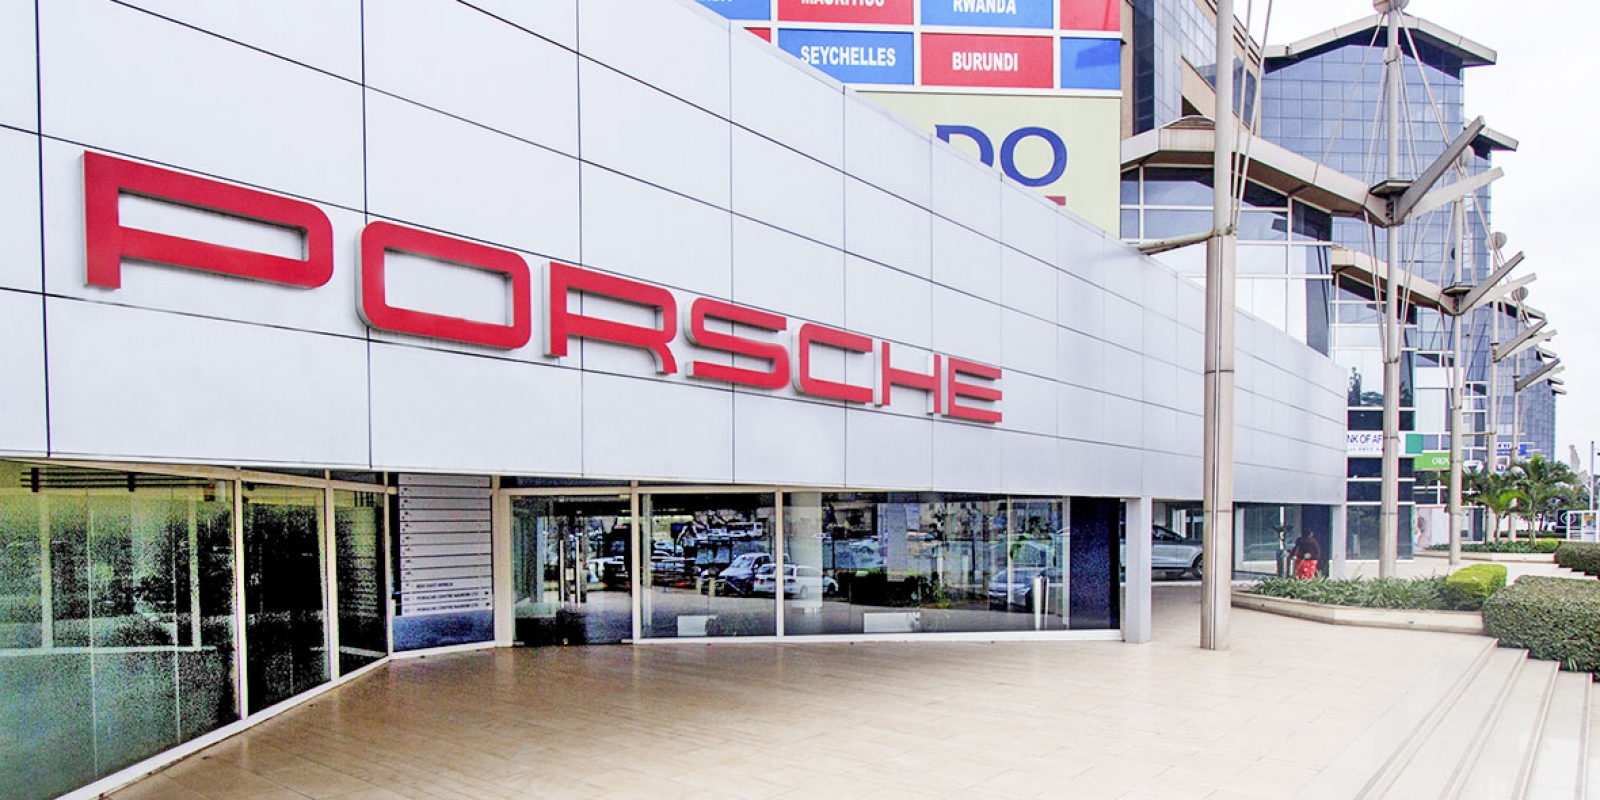 Porsche (Nairobi)